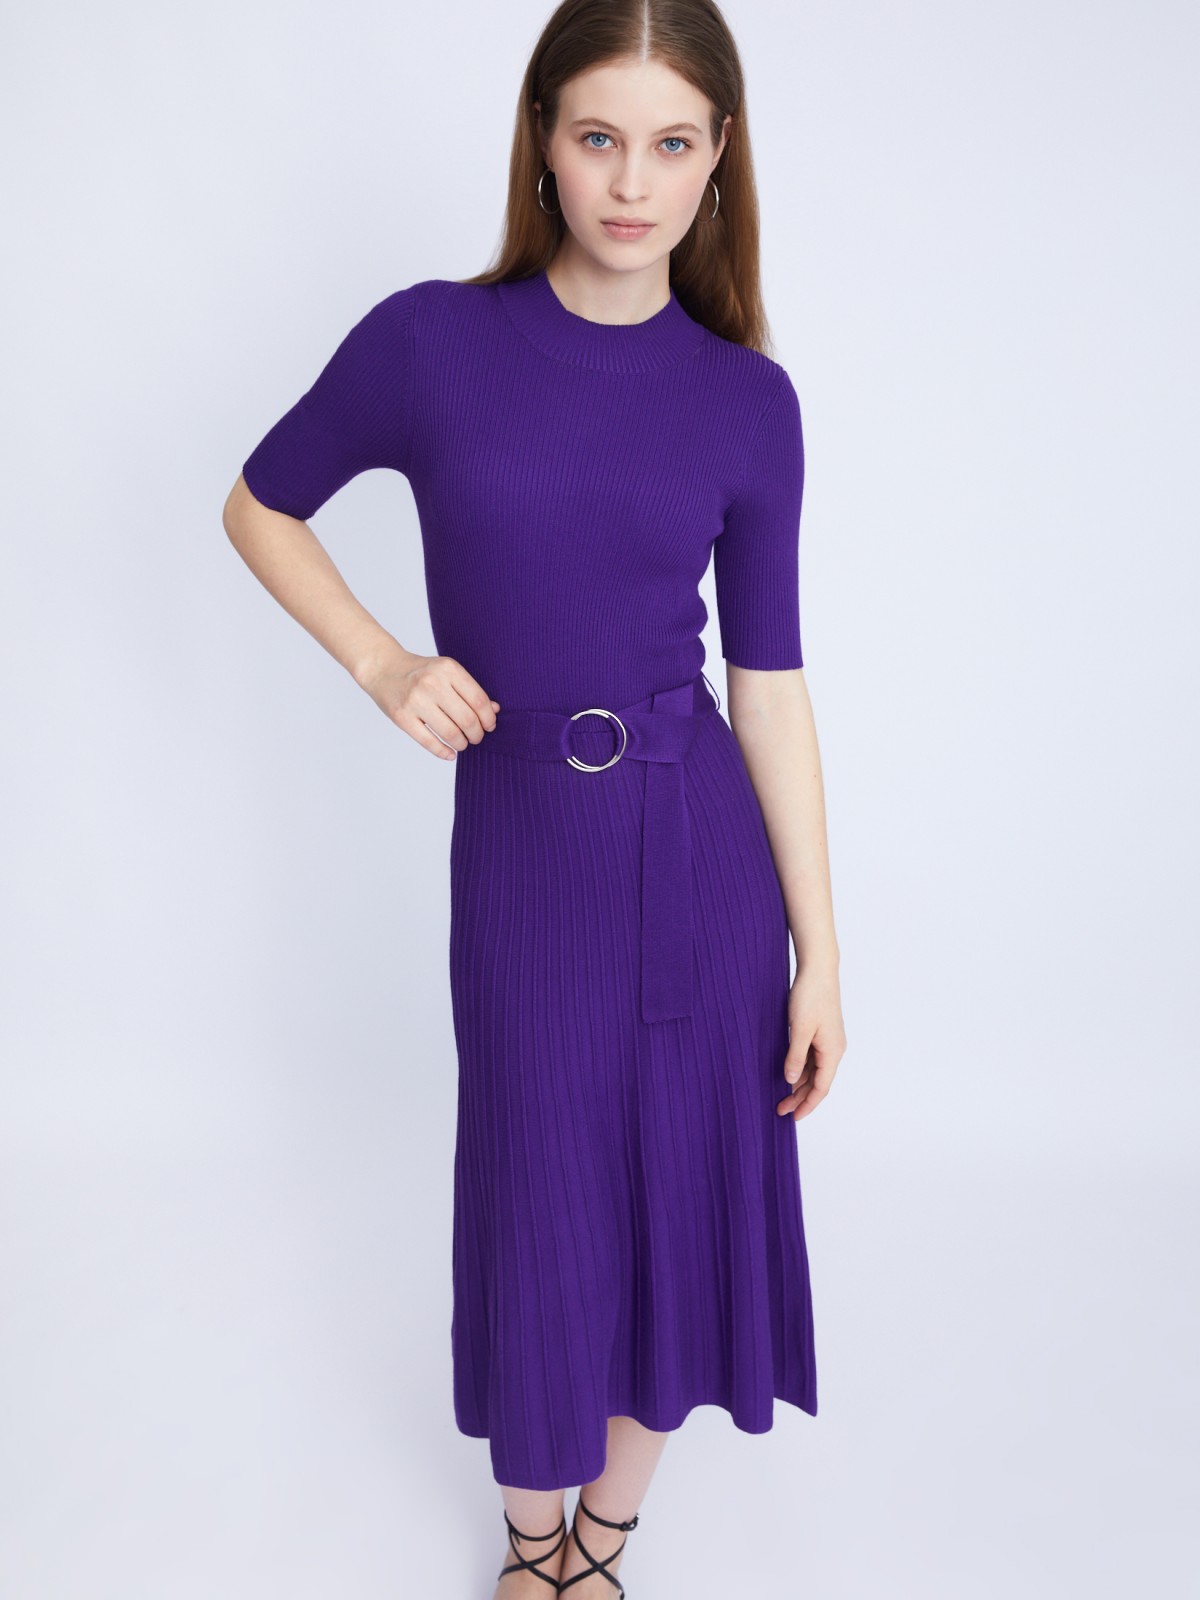 Платье вязаное zolla 223338443013, цвет сливовый, размер XL